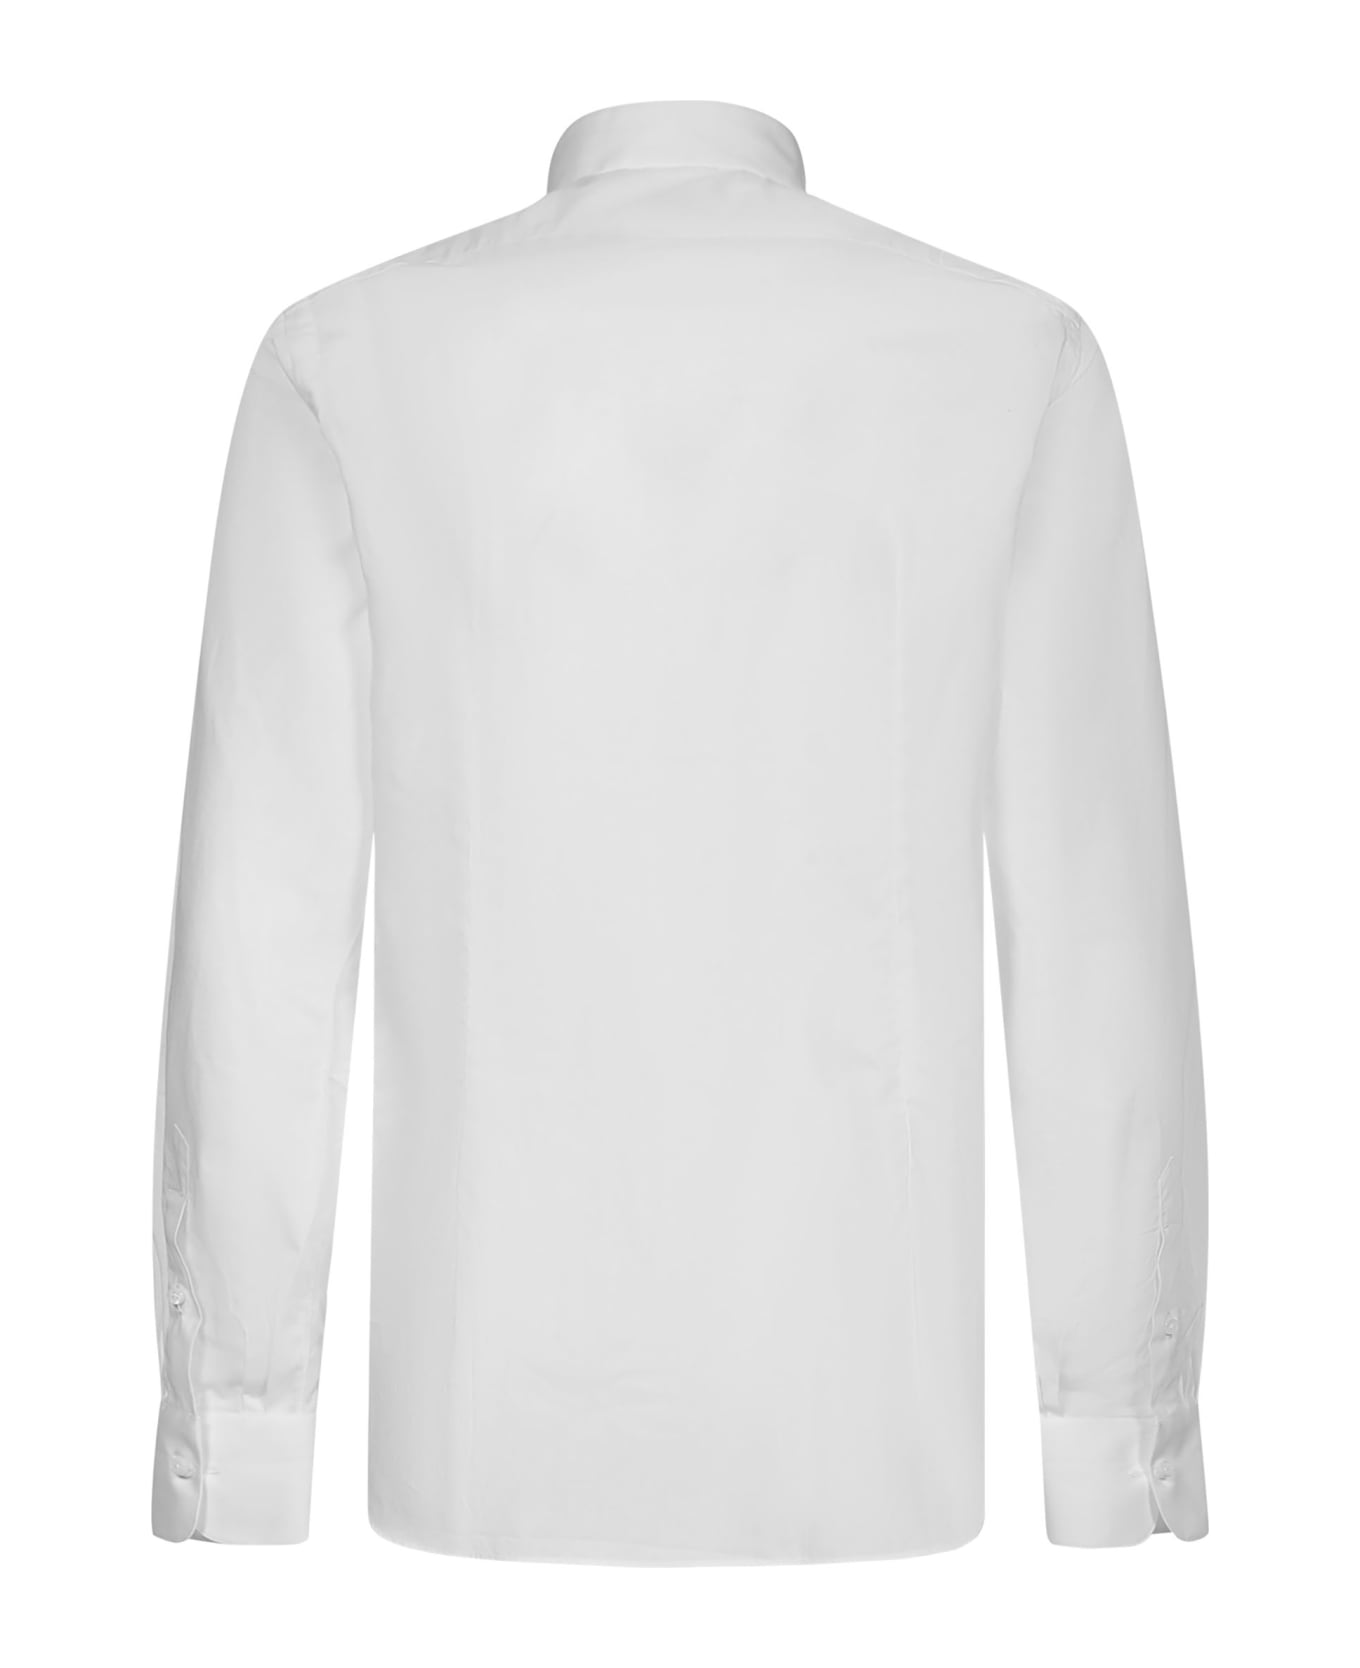 Luigi Borrelli Shirt - White